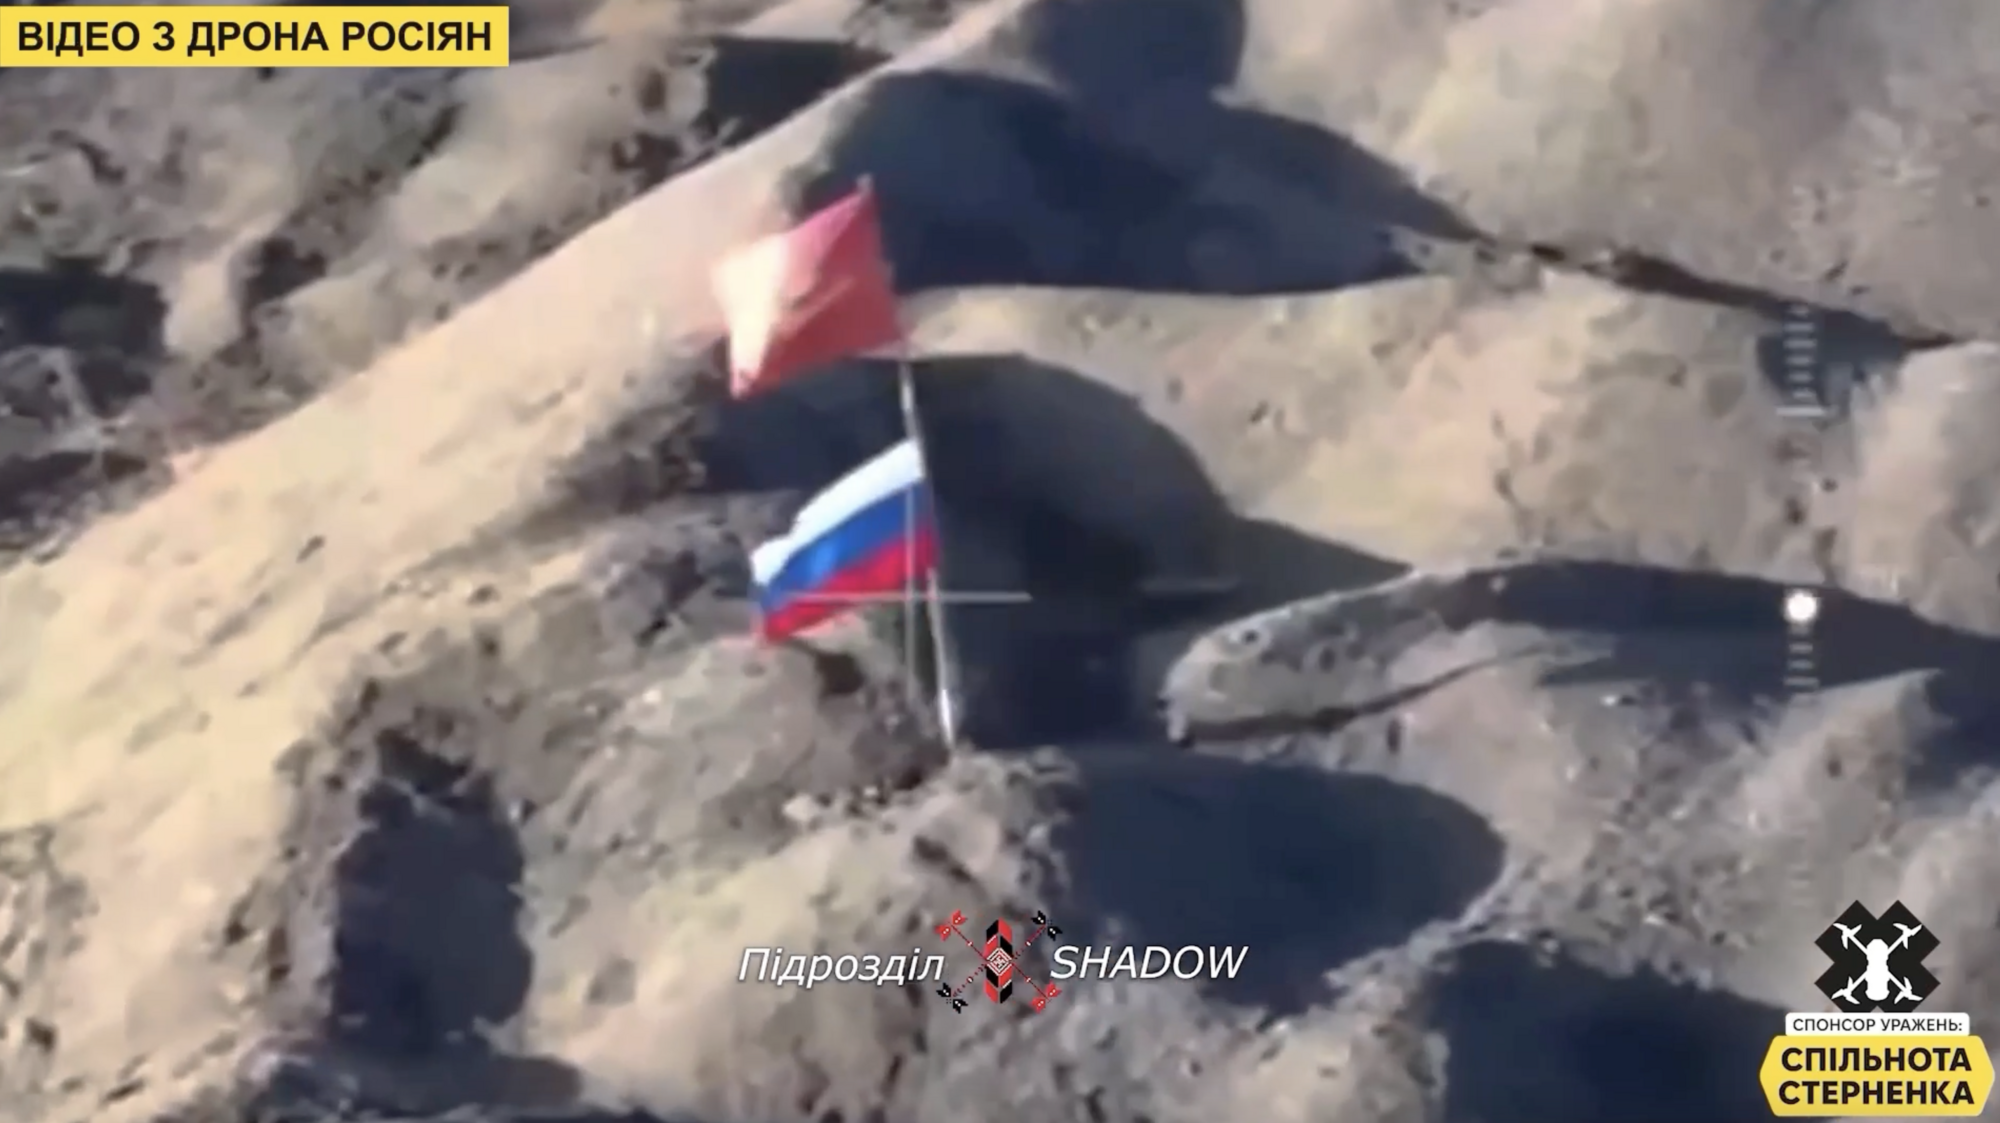 Провисели недолго: воины ВСУ дроном уничтожили российские флаги на Авдеевском терриконе. Видео